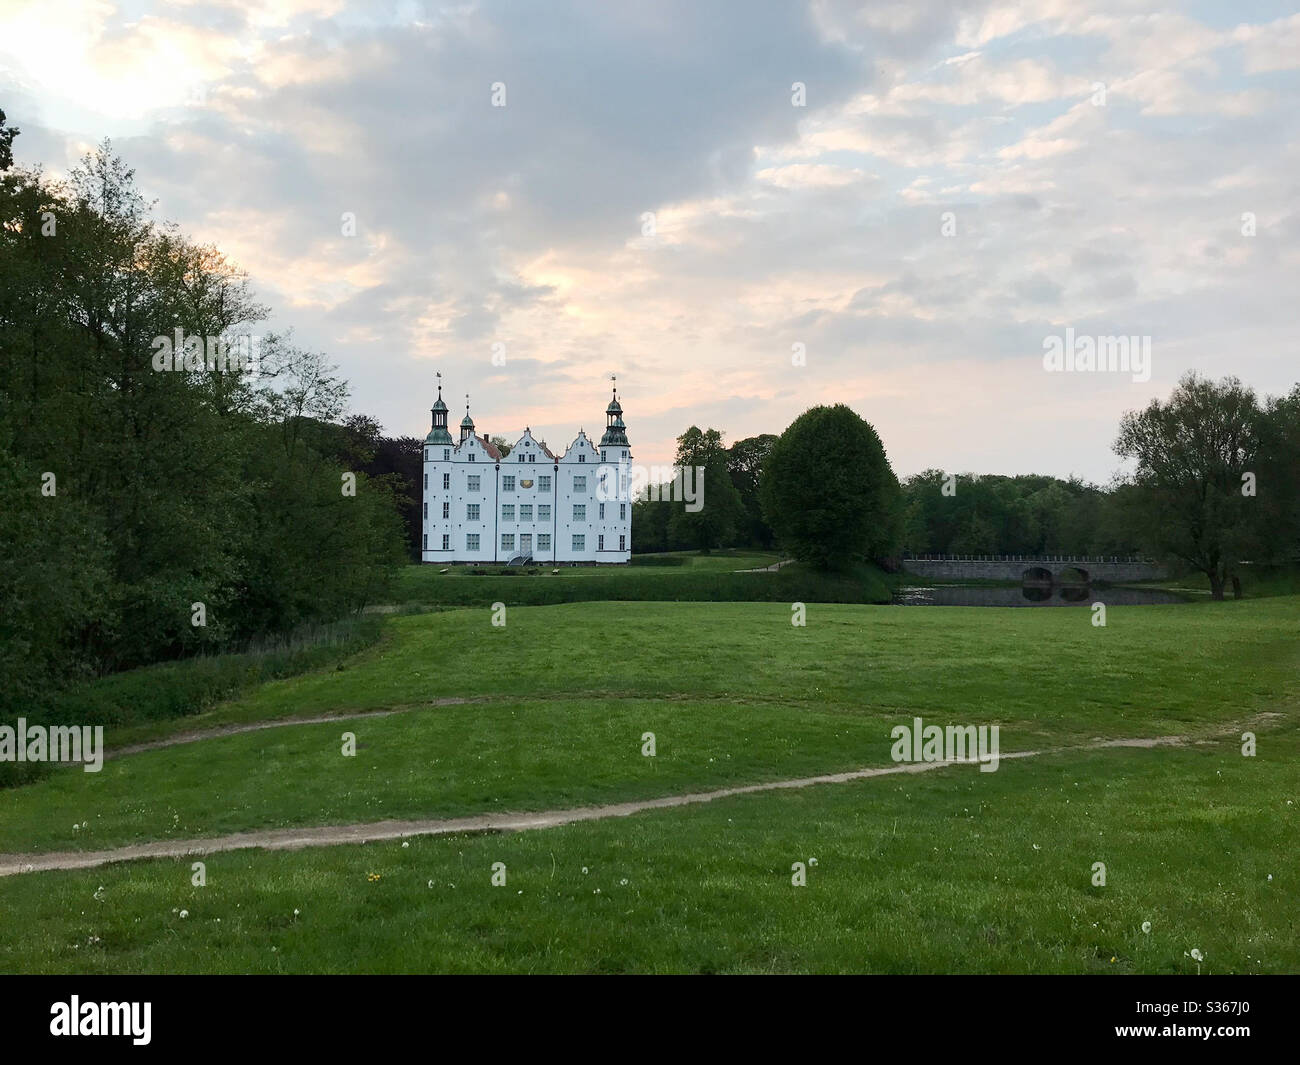 Panorama Aufnahme von einem Park mit dem Schloss Ahrensburg im Hintergrund Stock Photo